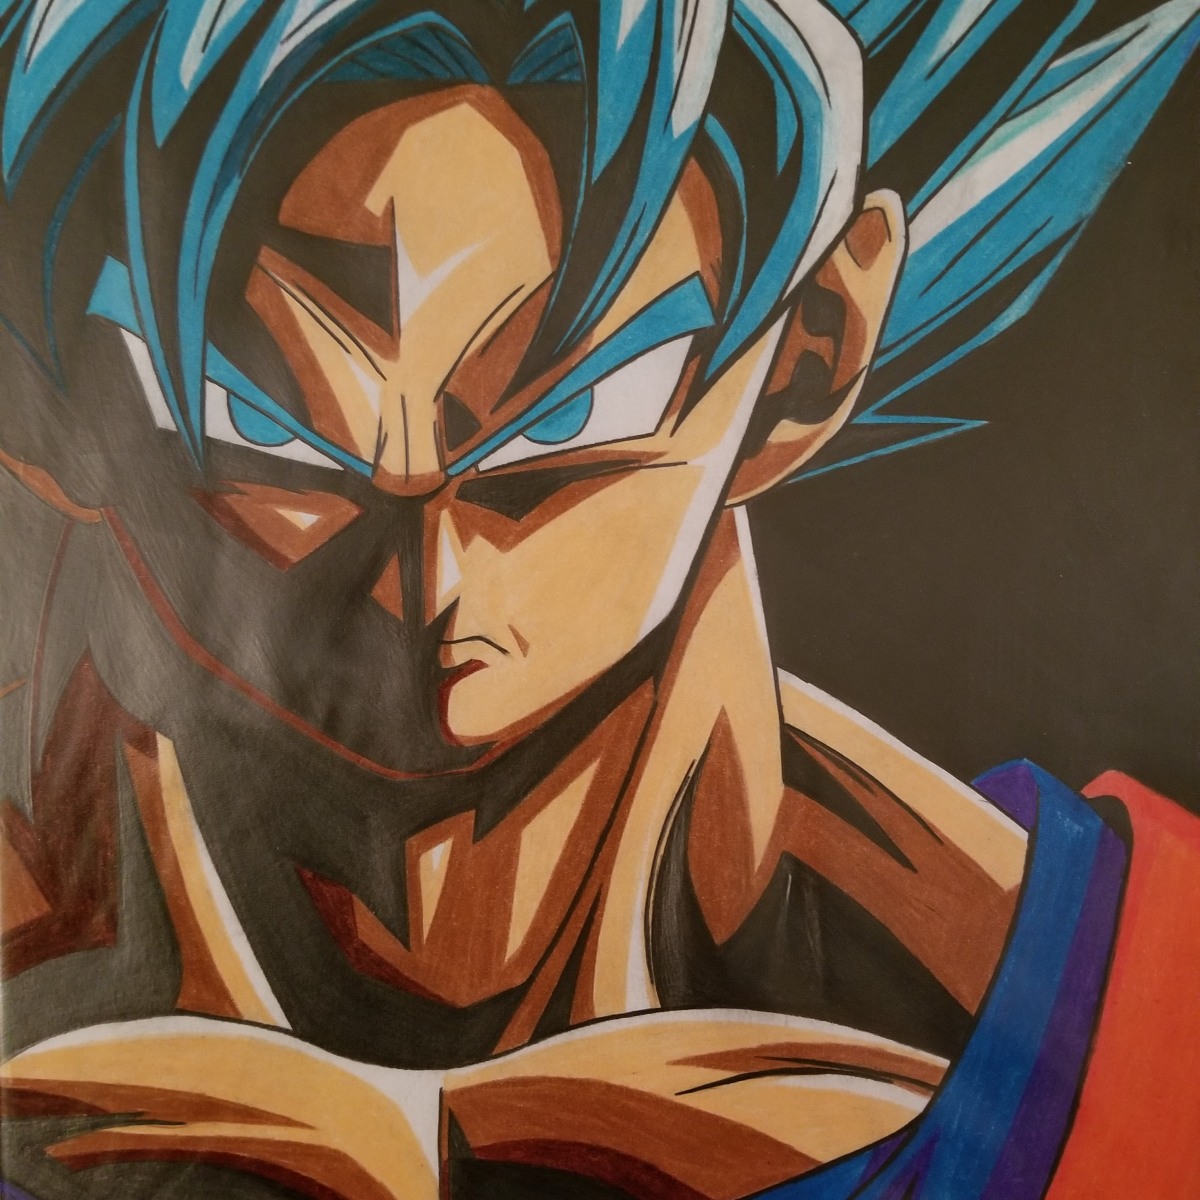 Goku super saiyan 3 blue by artizhd ❤  Desenho surrealismo, Desenho de  anime, Desenhando retratos